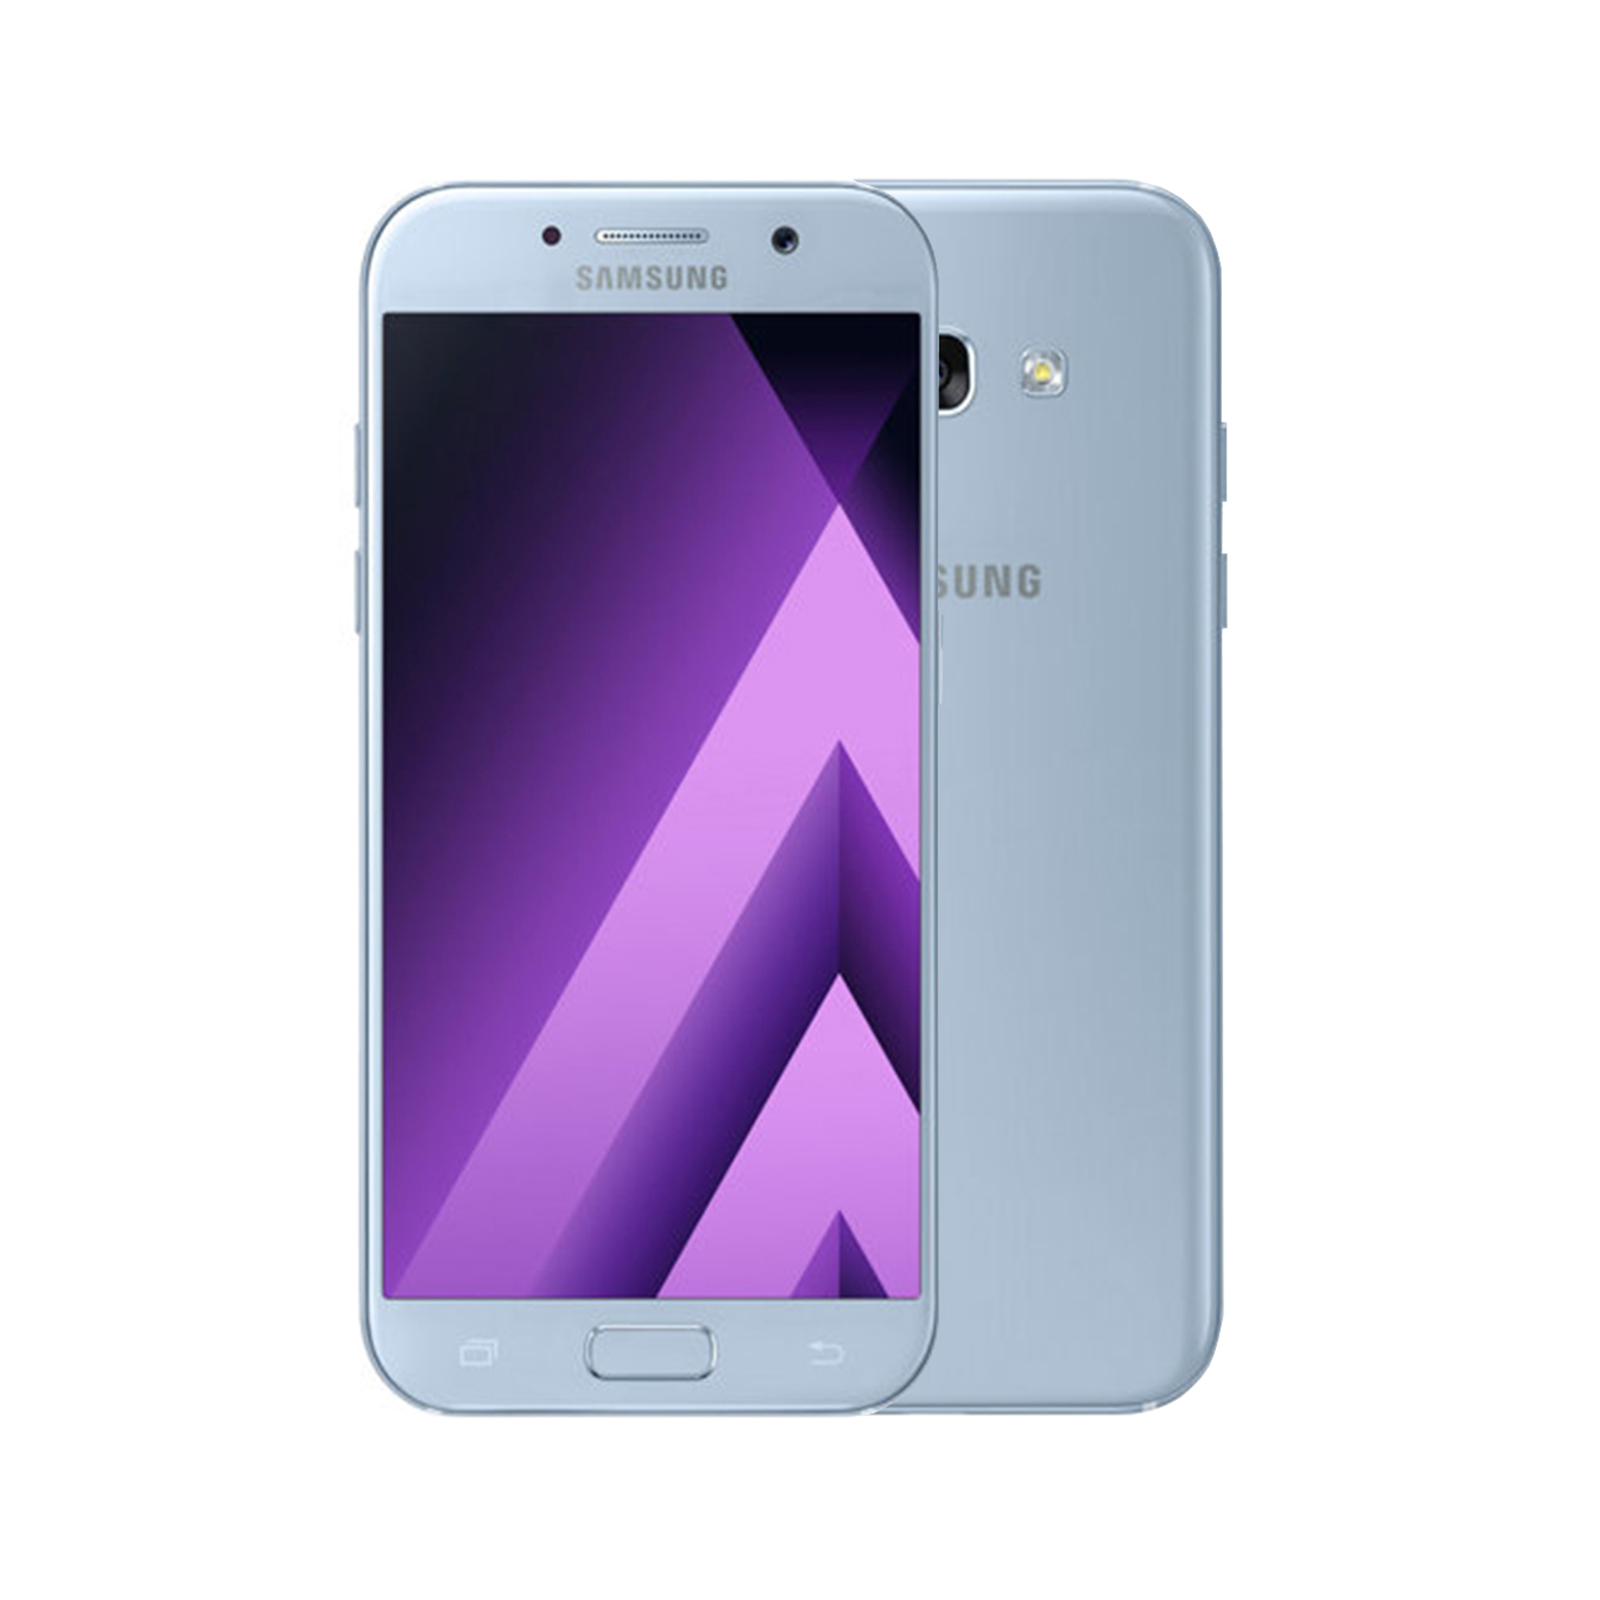 Samsung Galaxy A5 2017 A520F 32GB Black Gold Blue Peach Unlocked Smartphone